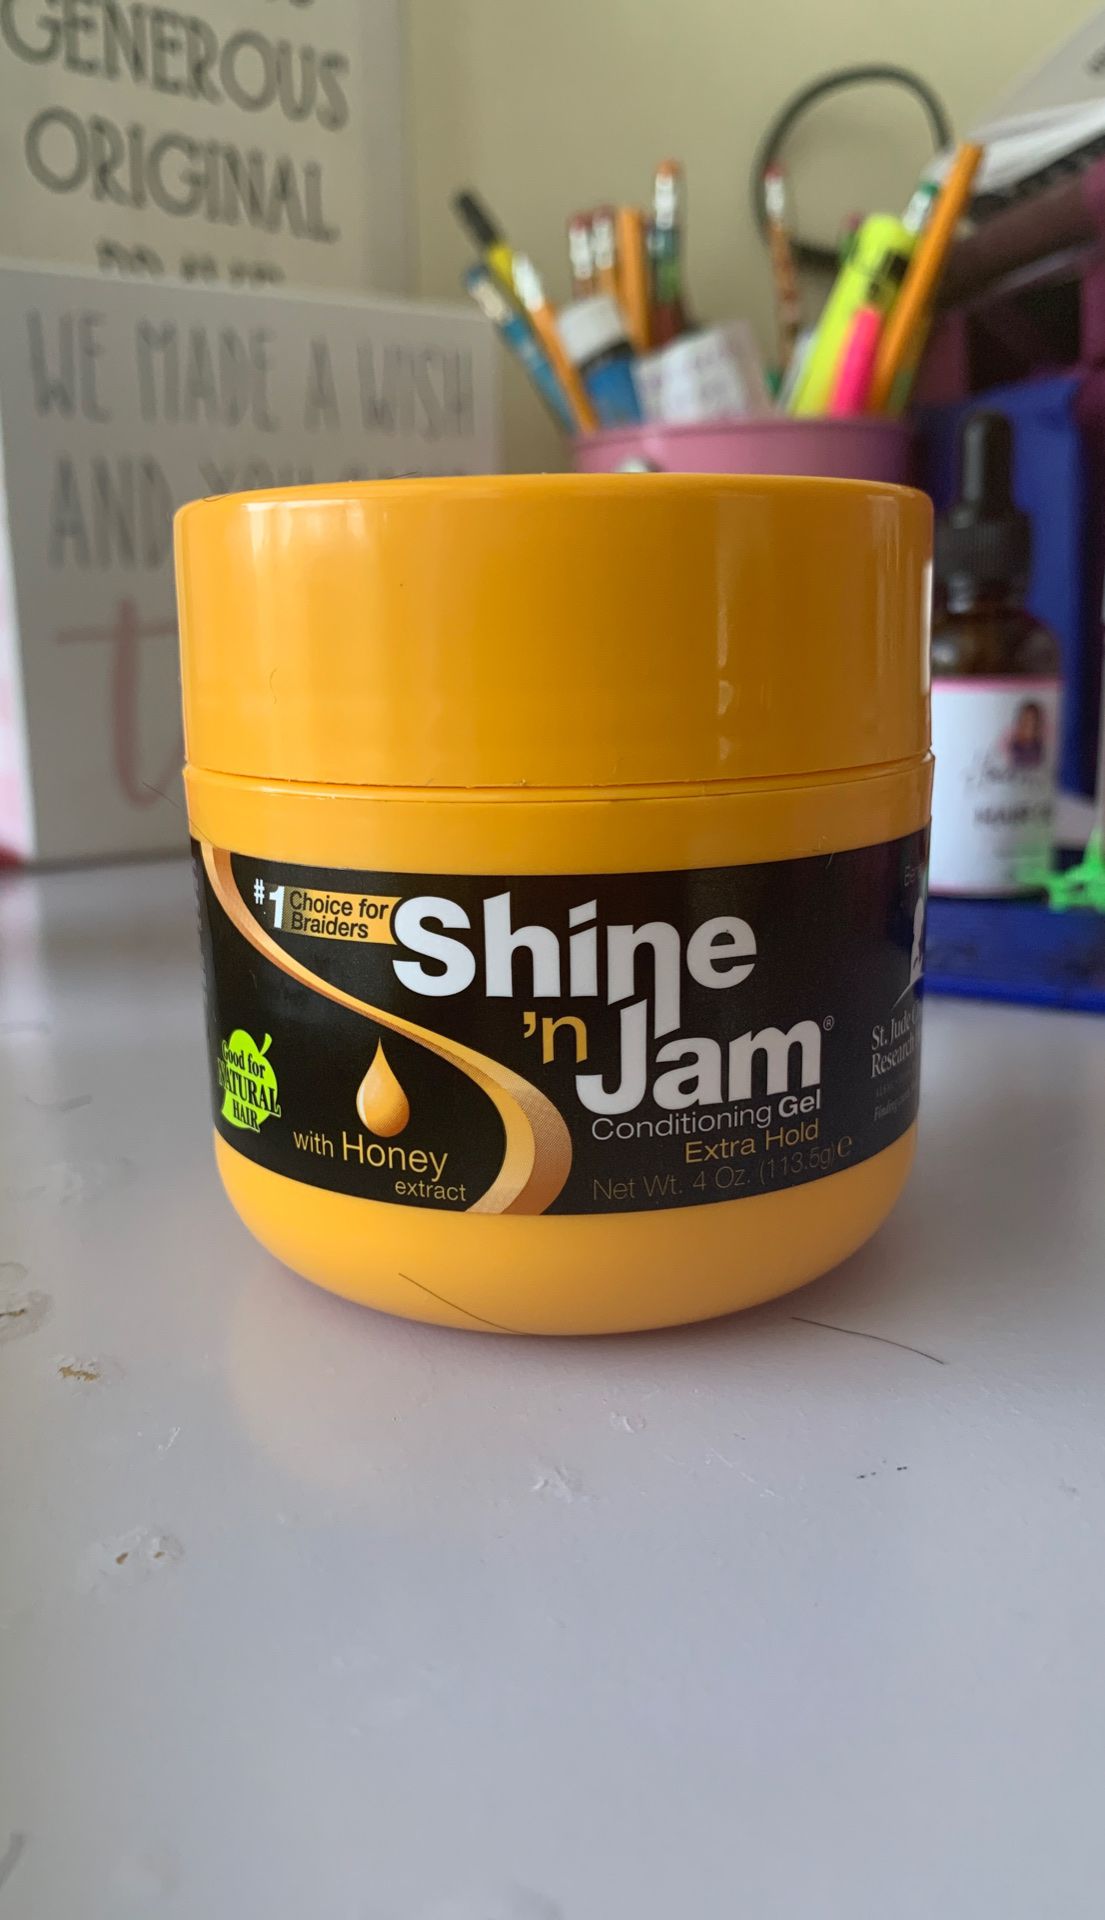 Shine and jam